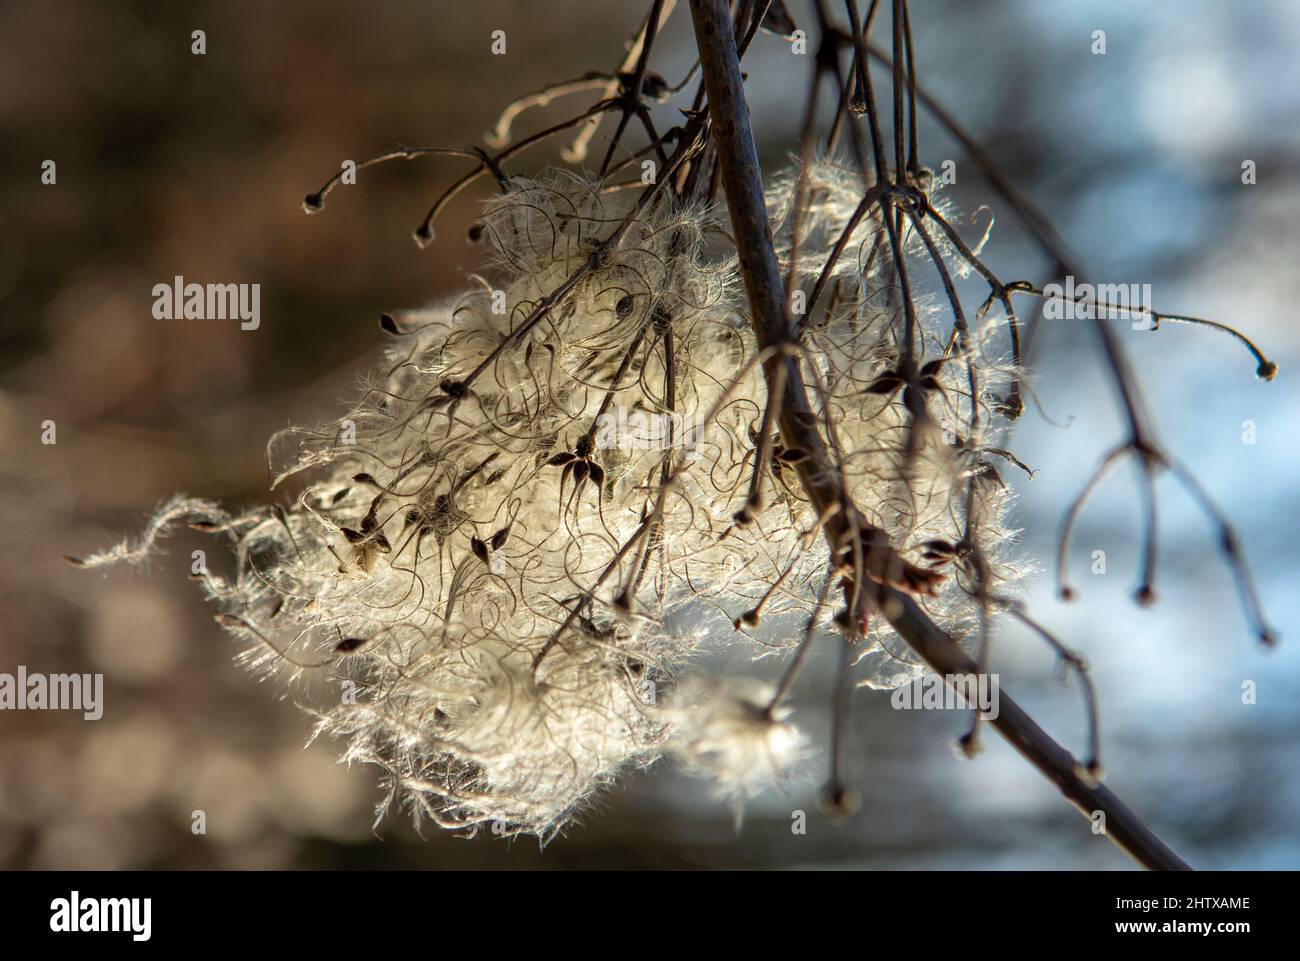 Teste di seme con appendici setose di clematis vitalba in inverno. La pianta è anche conosciuta come la barba dell'uomo anziano o la gioia del viaggiatore. Foto Stock